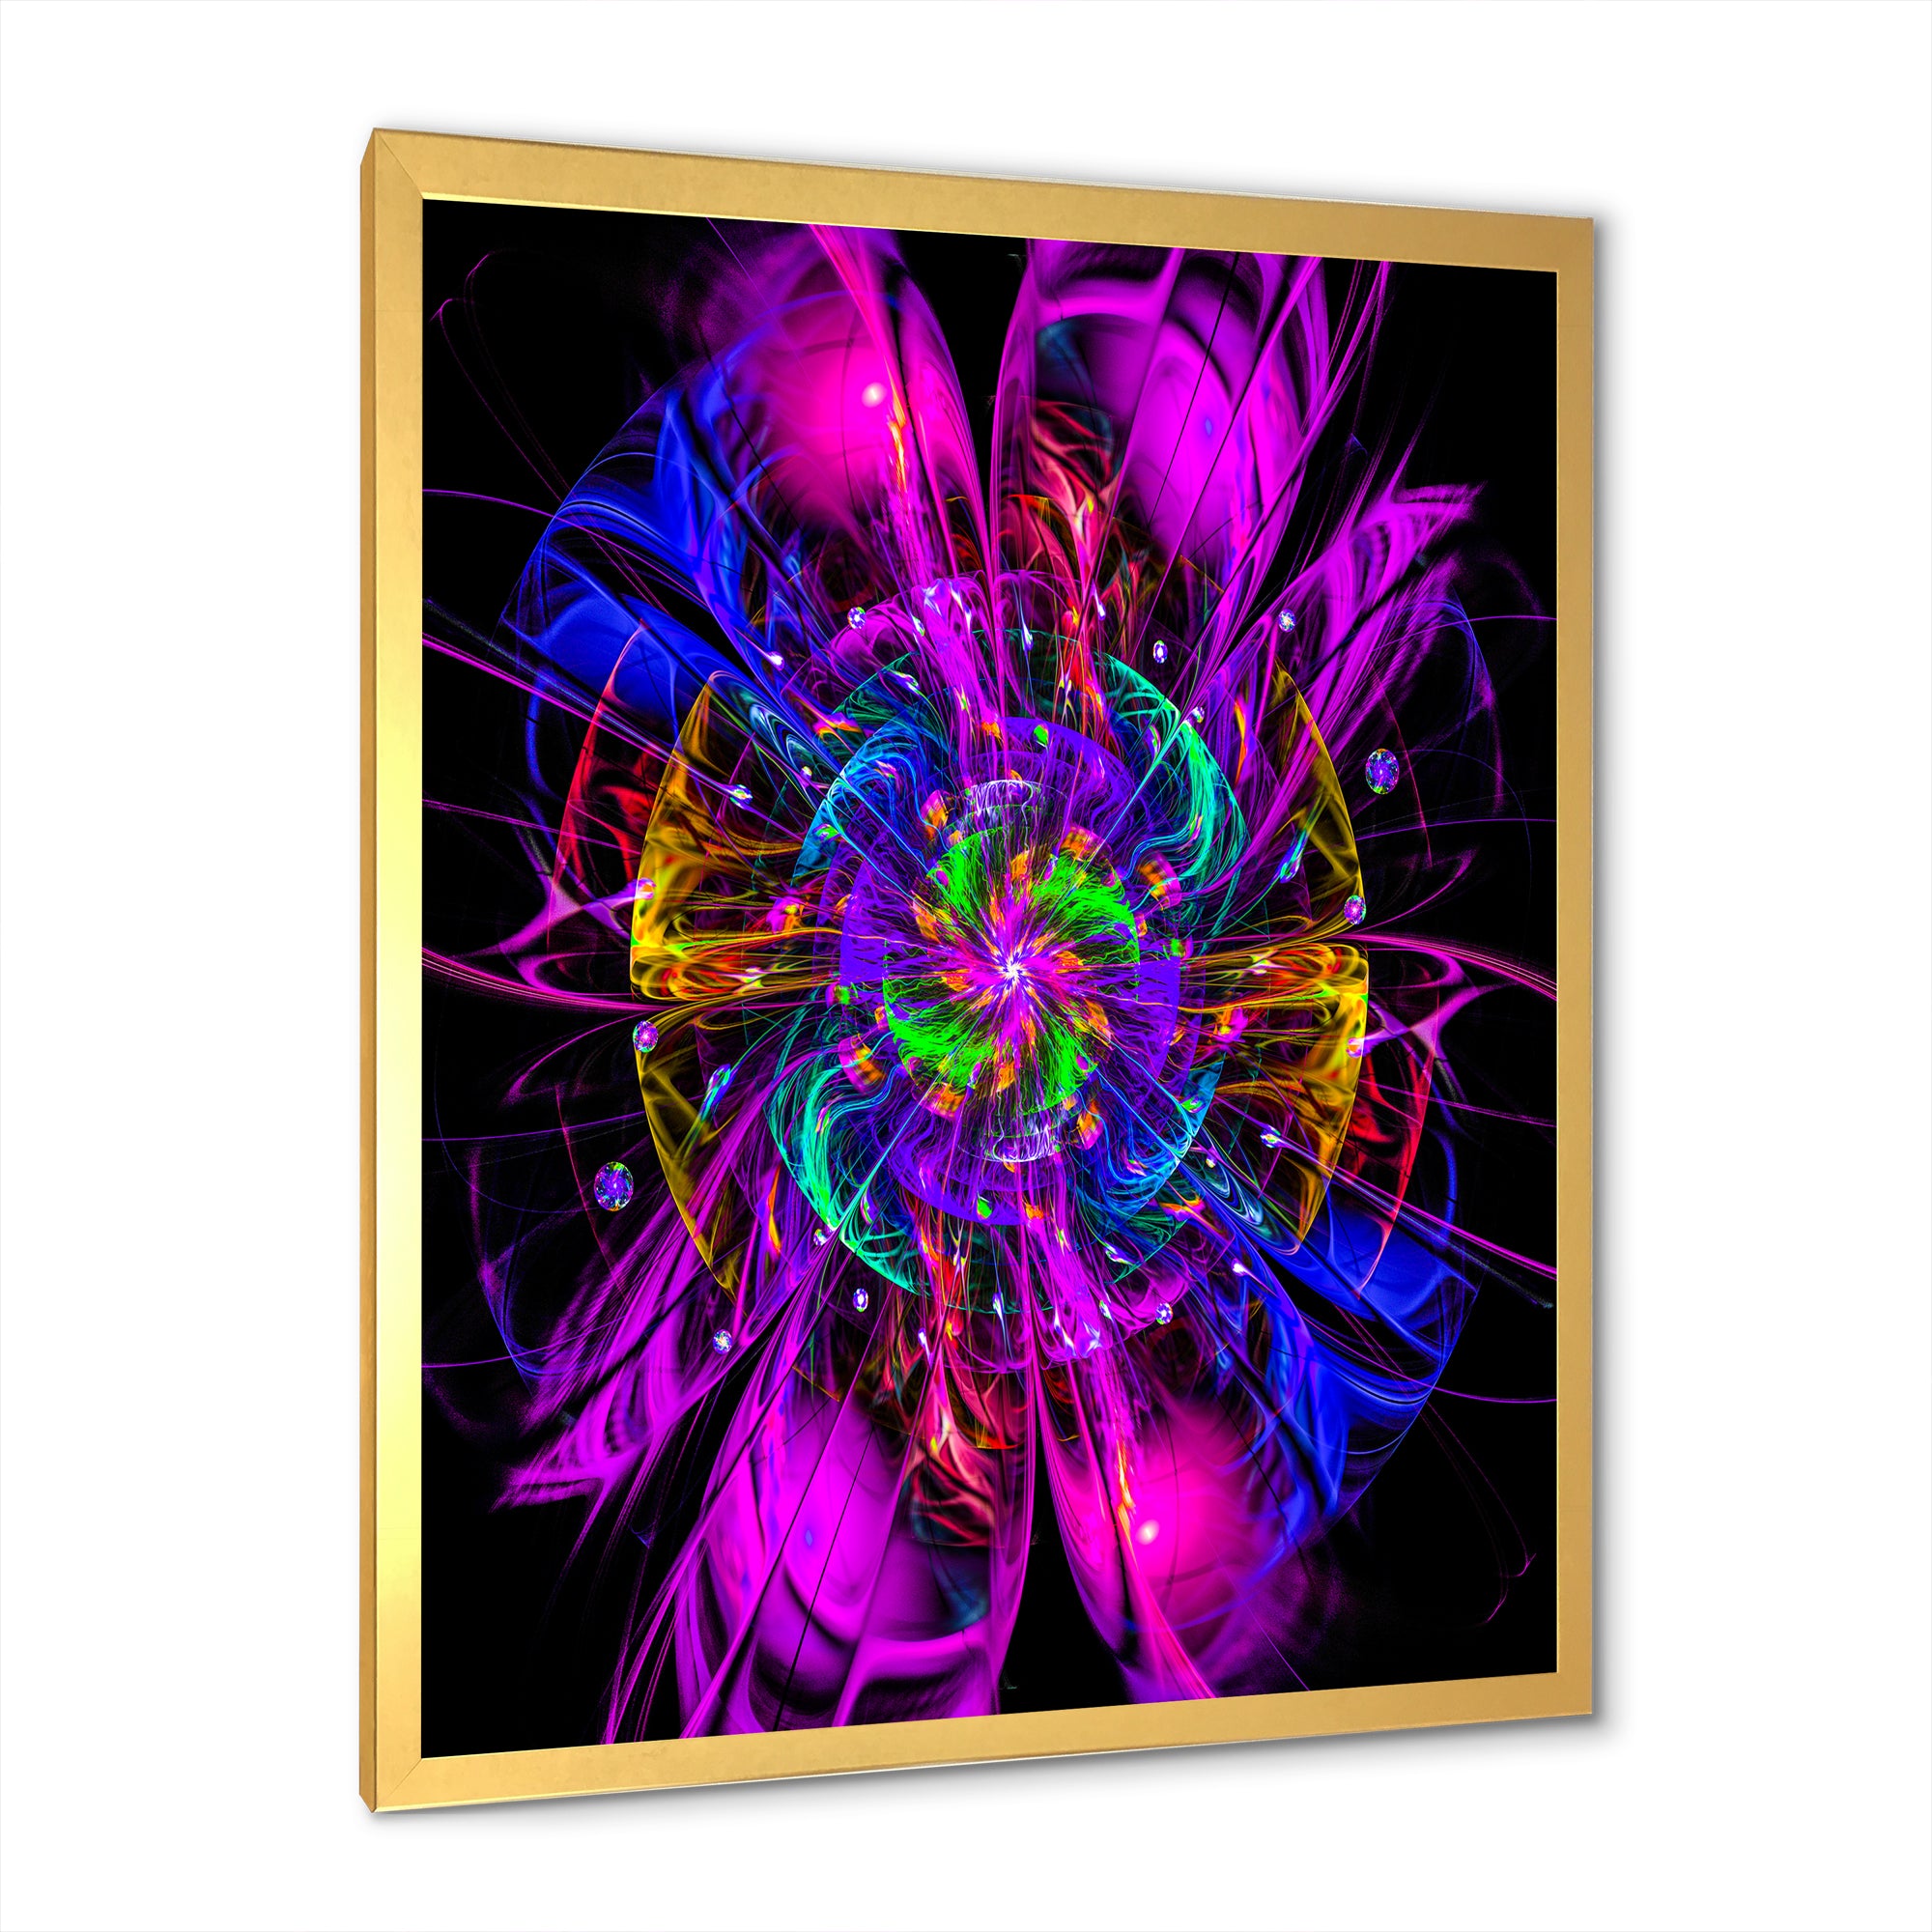 Ideal Fractal Flower Digital Art in Purple